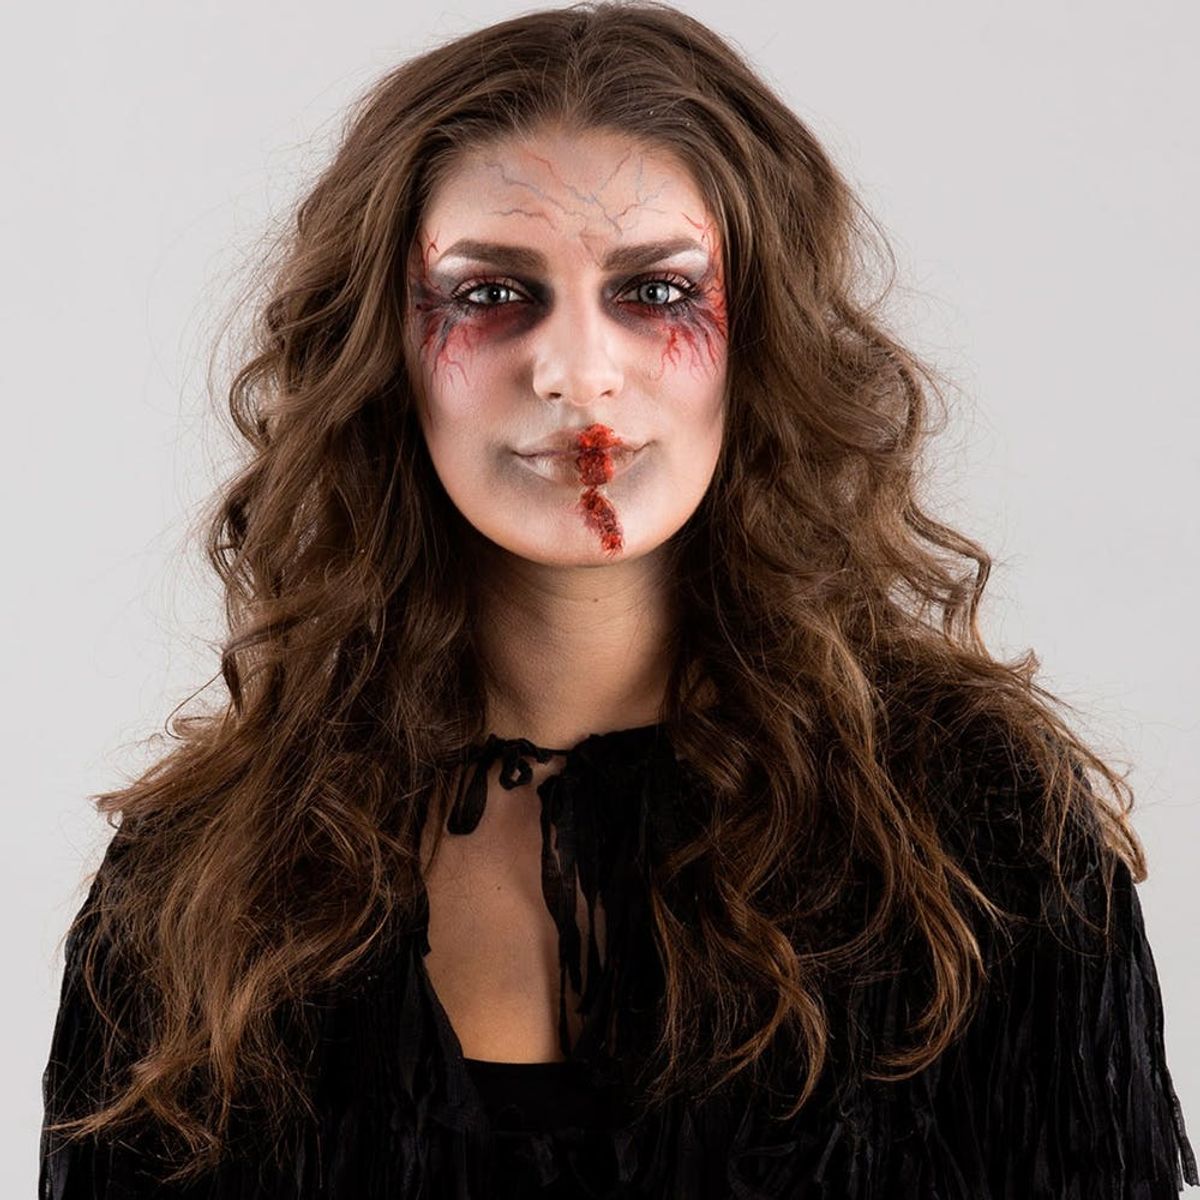 zombie halloween makeup tutorial